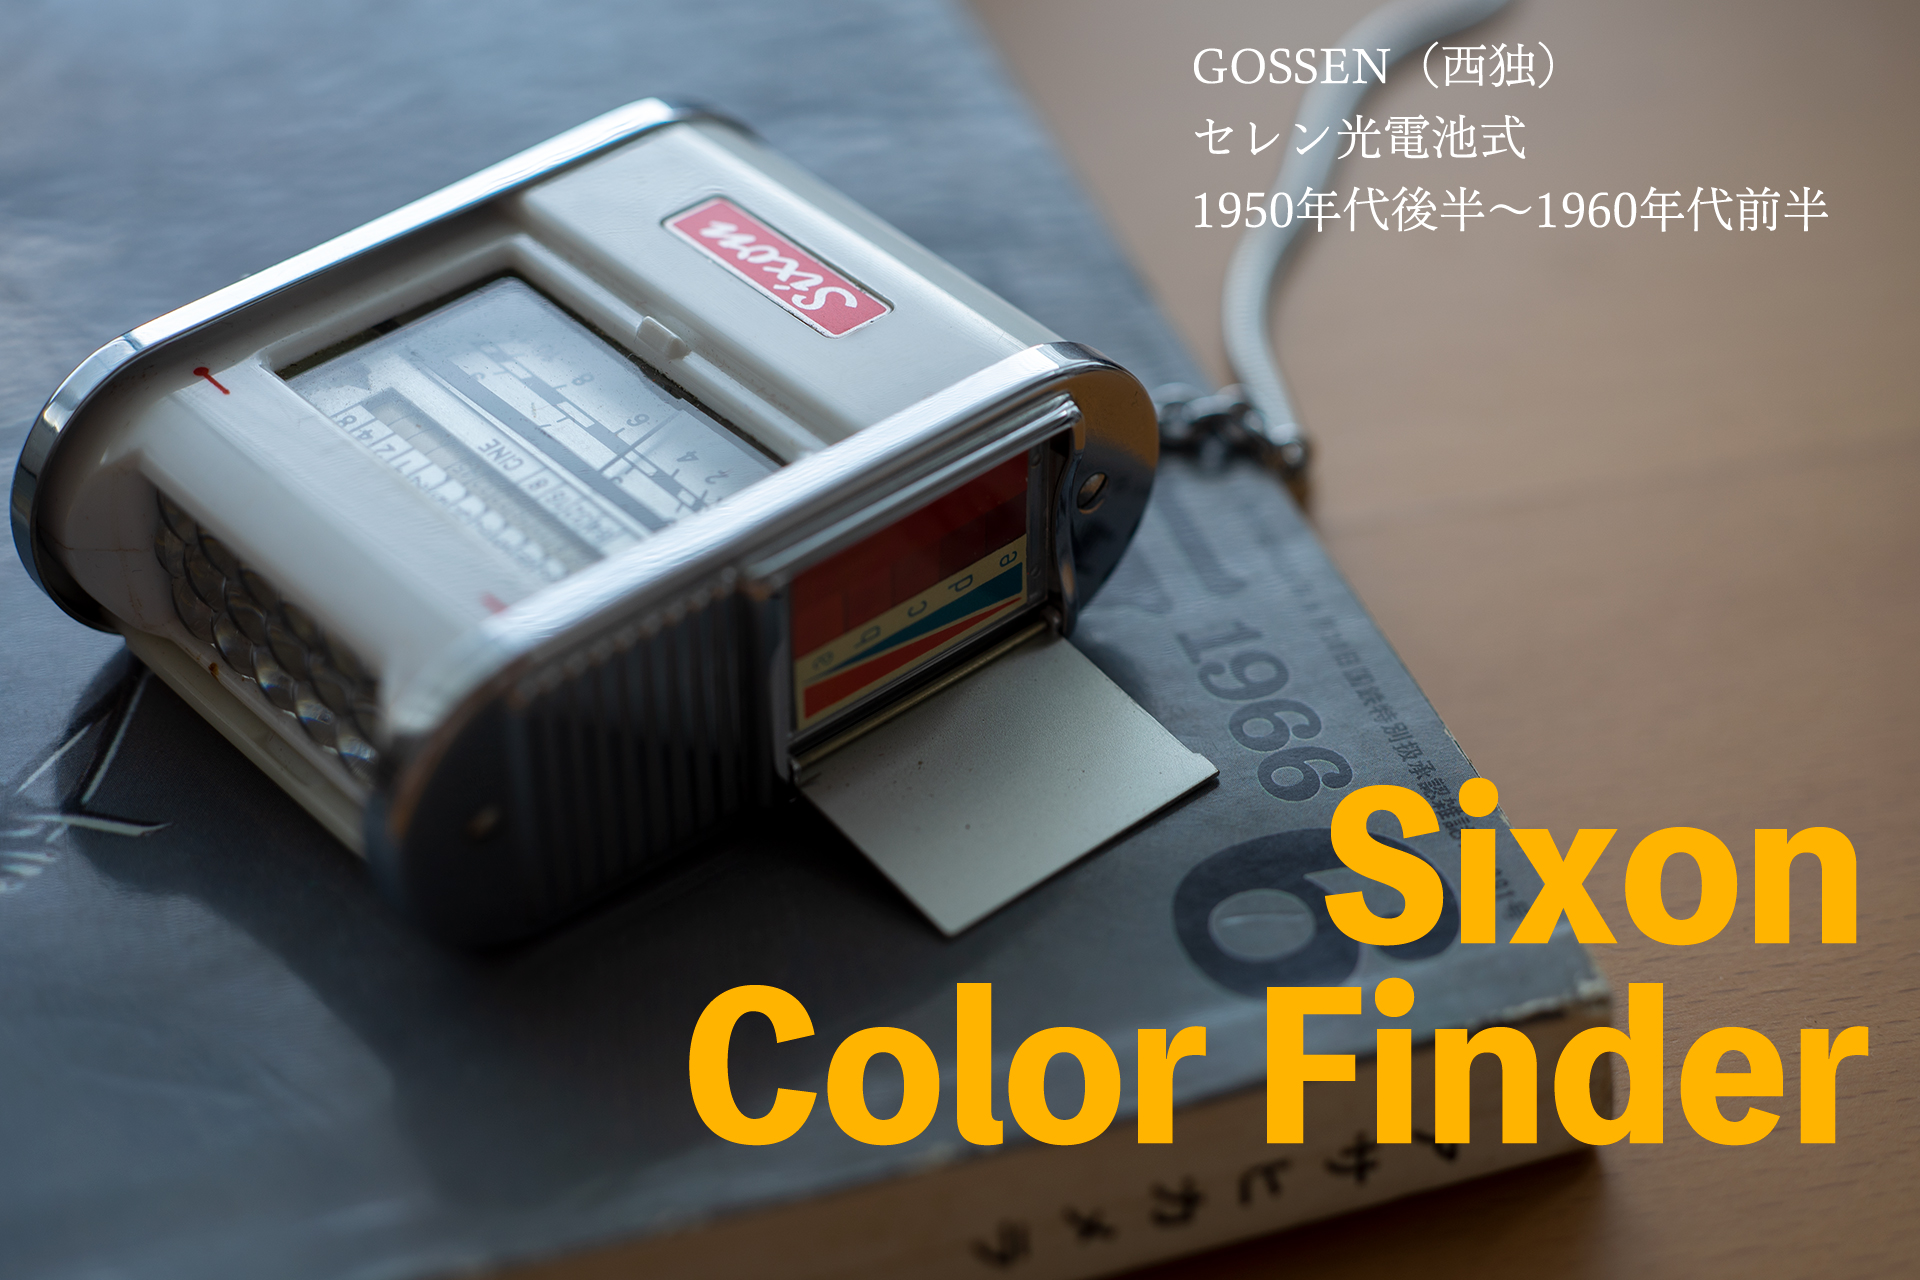 Sixon Color Finder / Gossen（西独）